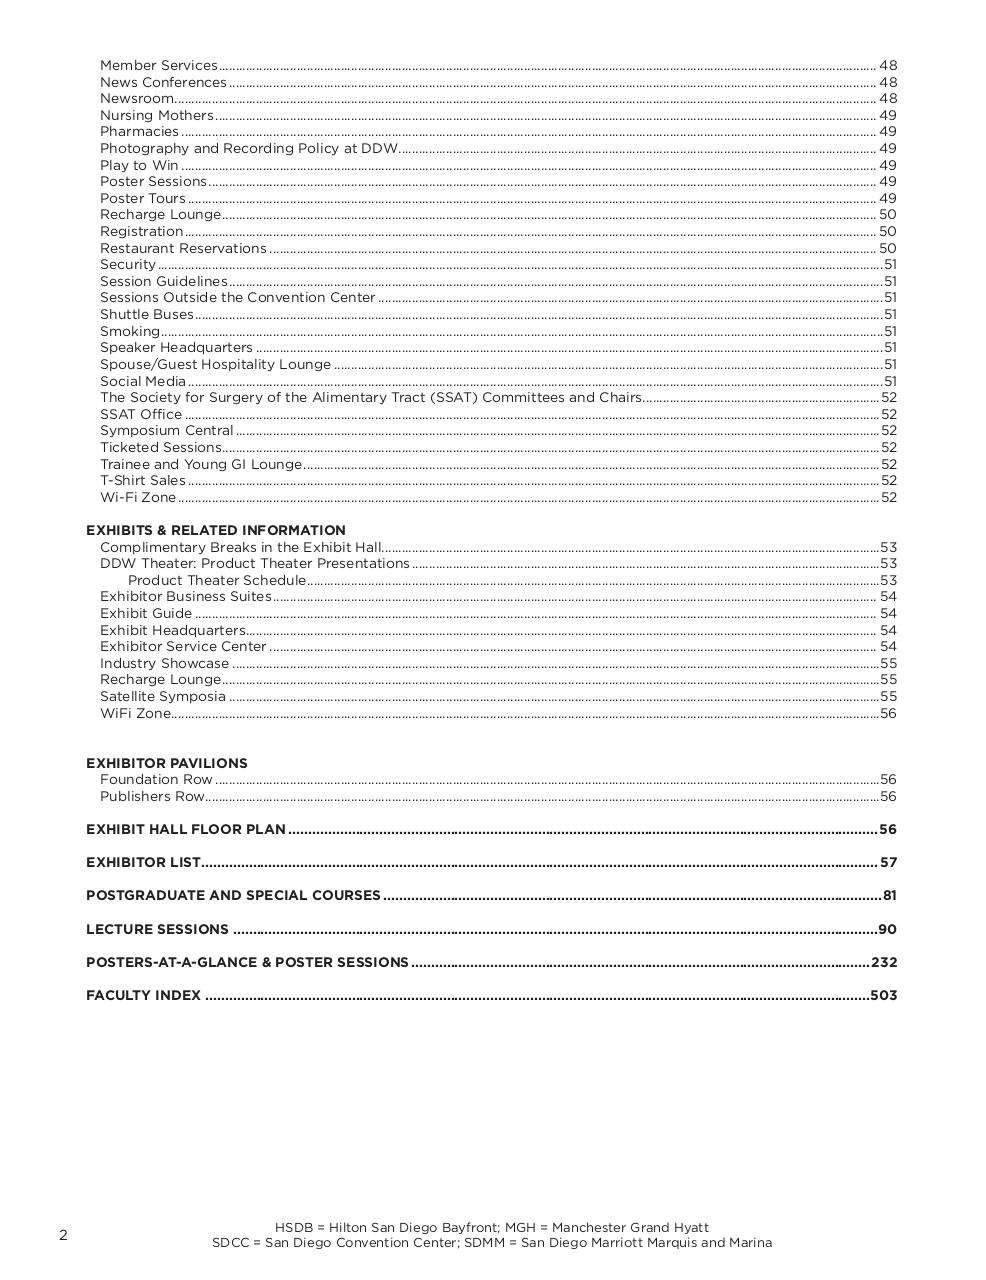 ddw_sandiego2016_agenda.pdf - page 4/600